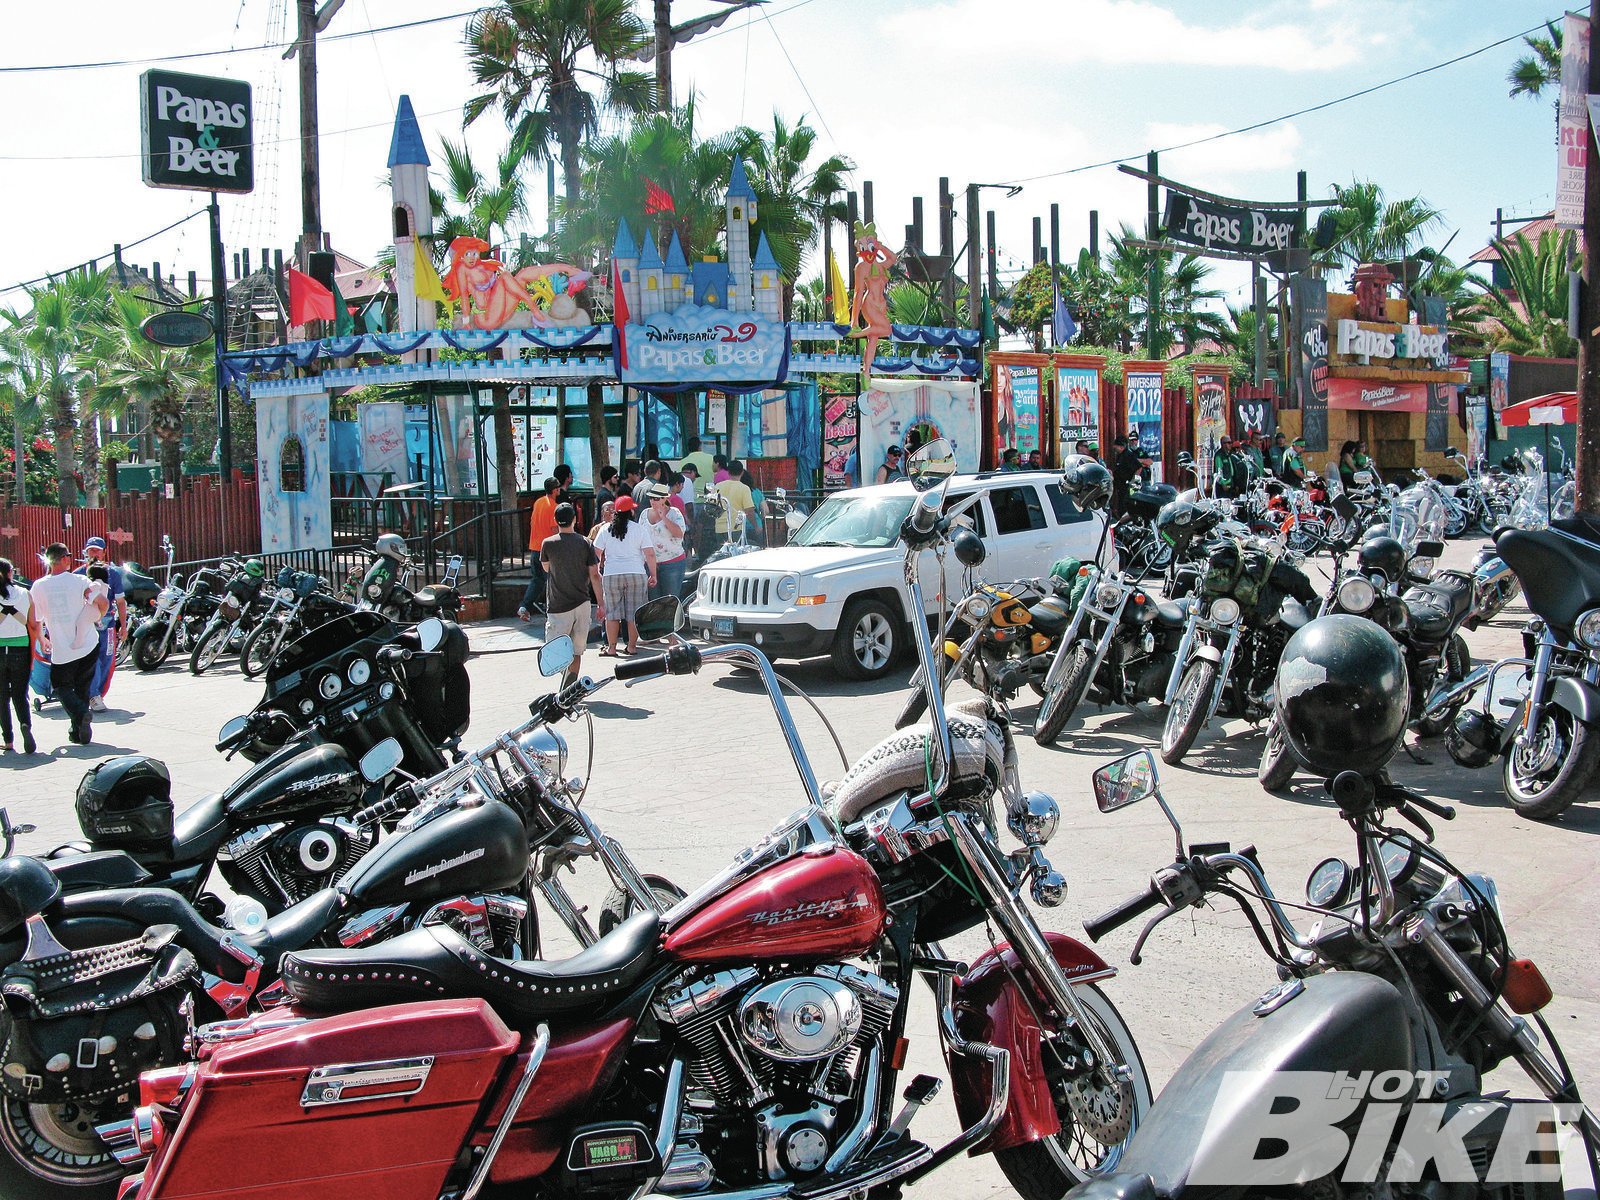 Rosarito Beach Harley Run Hot Bike Magazine